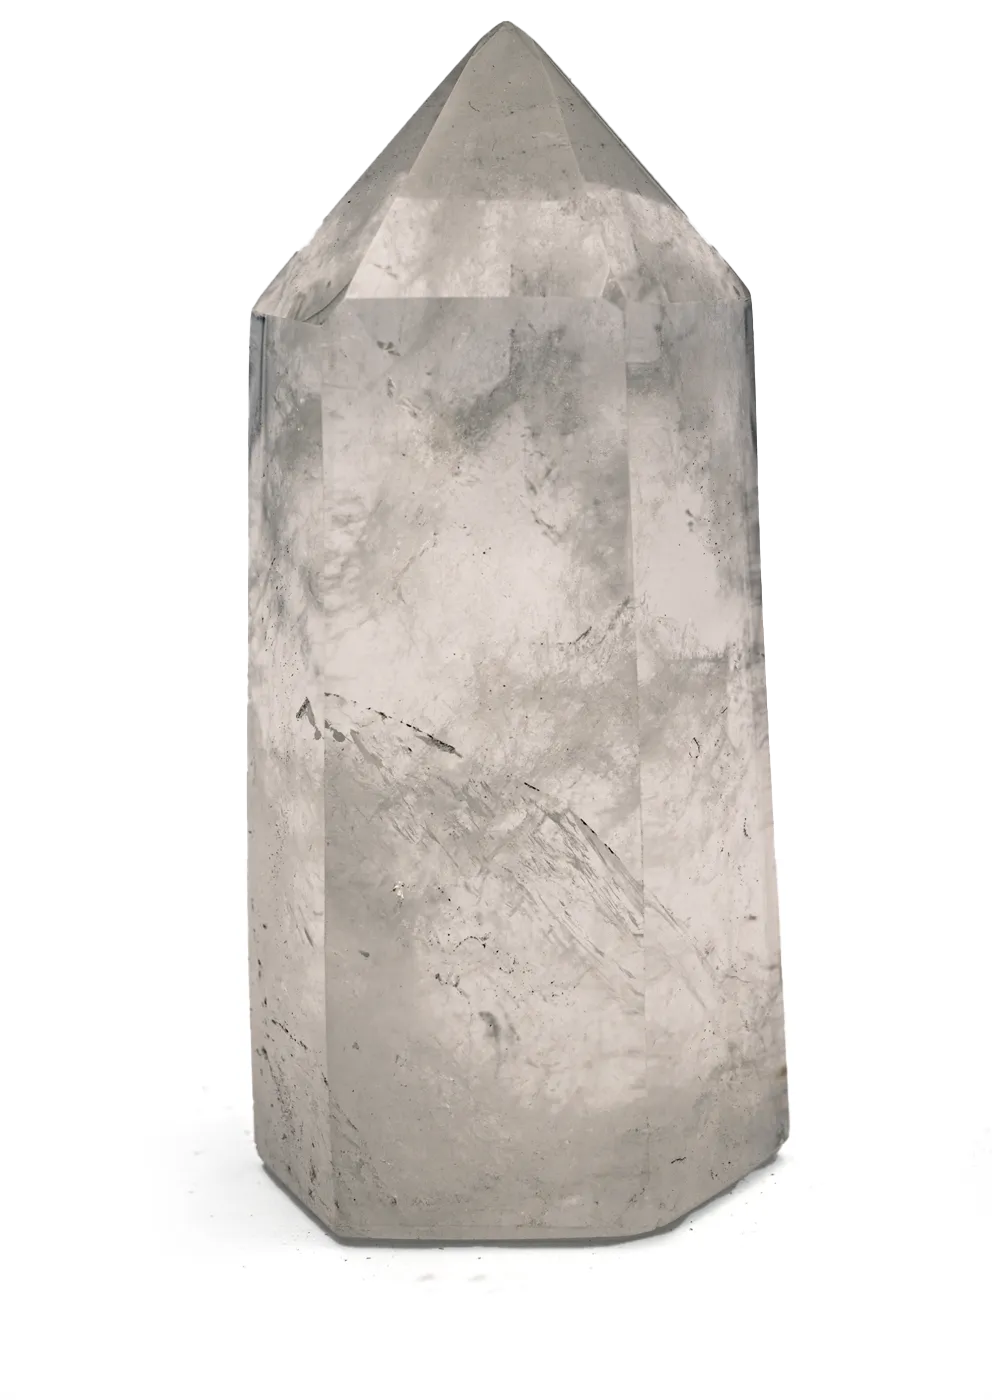 pierre-cristal-quartz-roche-prisme-decorative-salon-maison